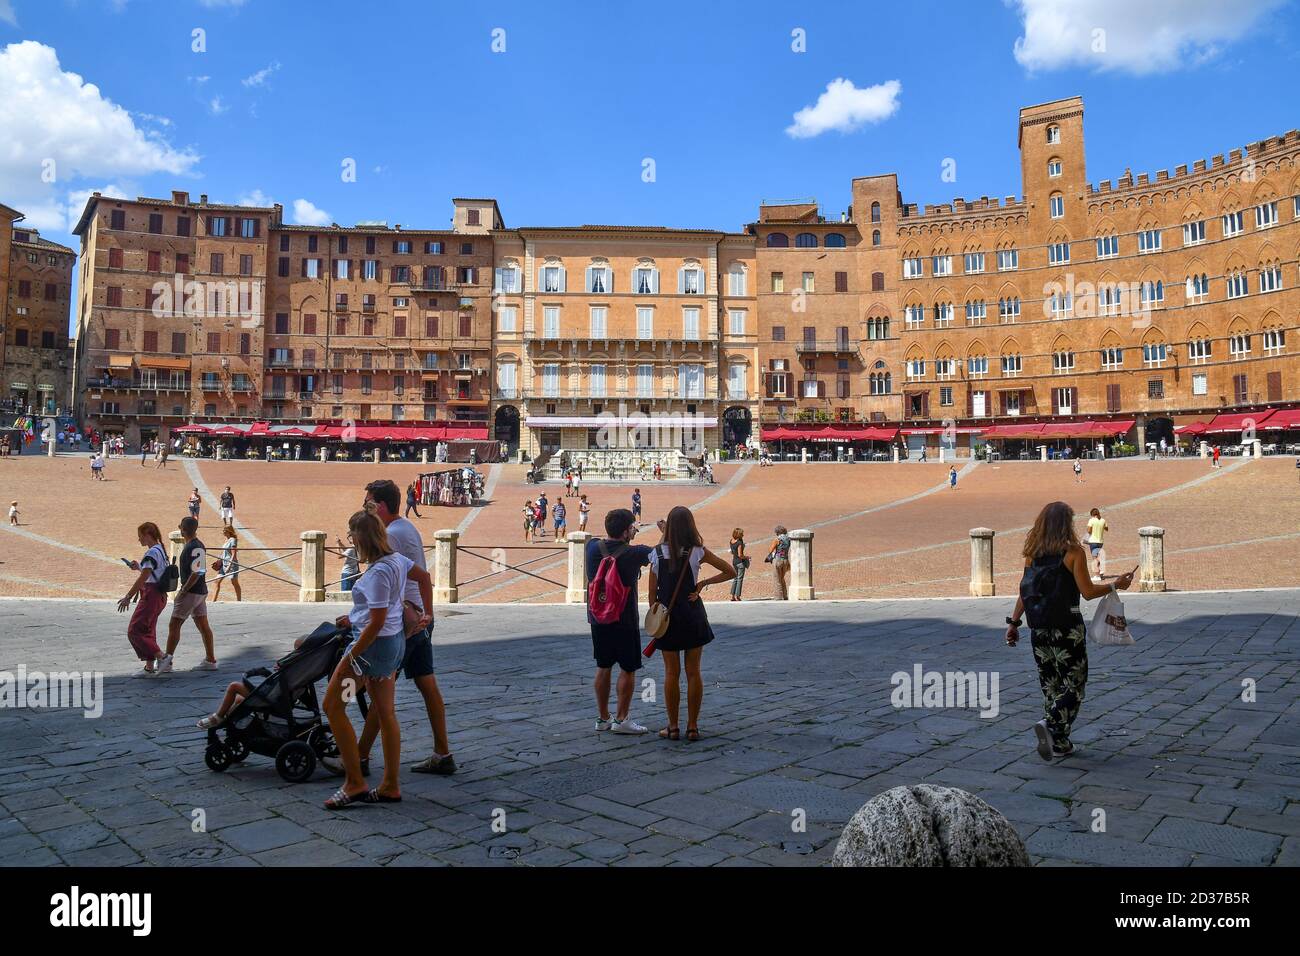 Vue sur la place Piazza del Campo dans le centre historique de Sienne, site classé au patrimoine mondial de l'UNESCO, avec des gens et des touristes en été, Toscane, Italie Banque D'Images